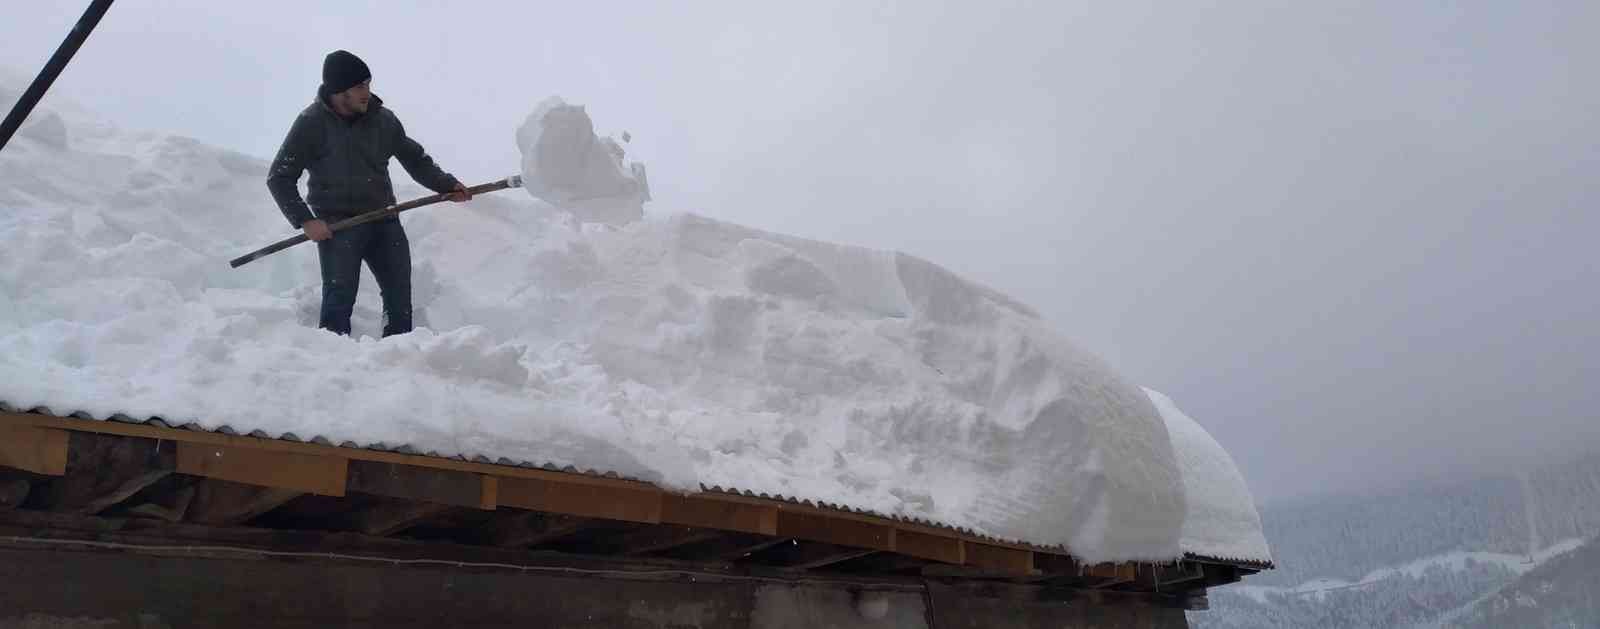 Vatandaşlar evlerinin çatılarındaki kar kütlelerini temizlemeye çalışıyor #kastamonu